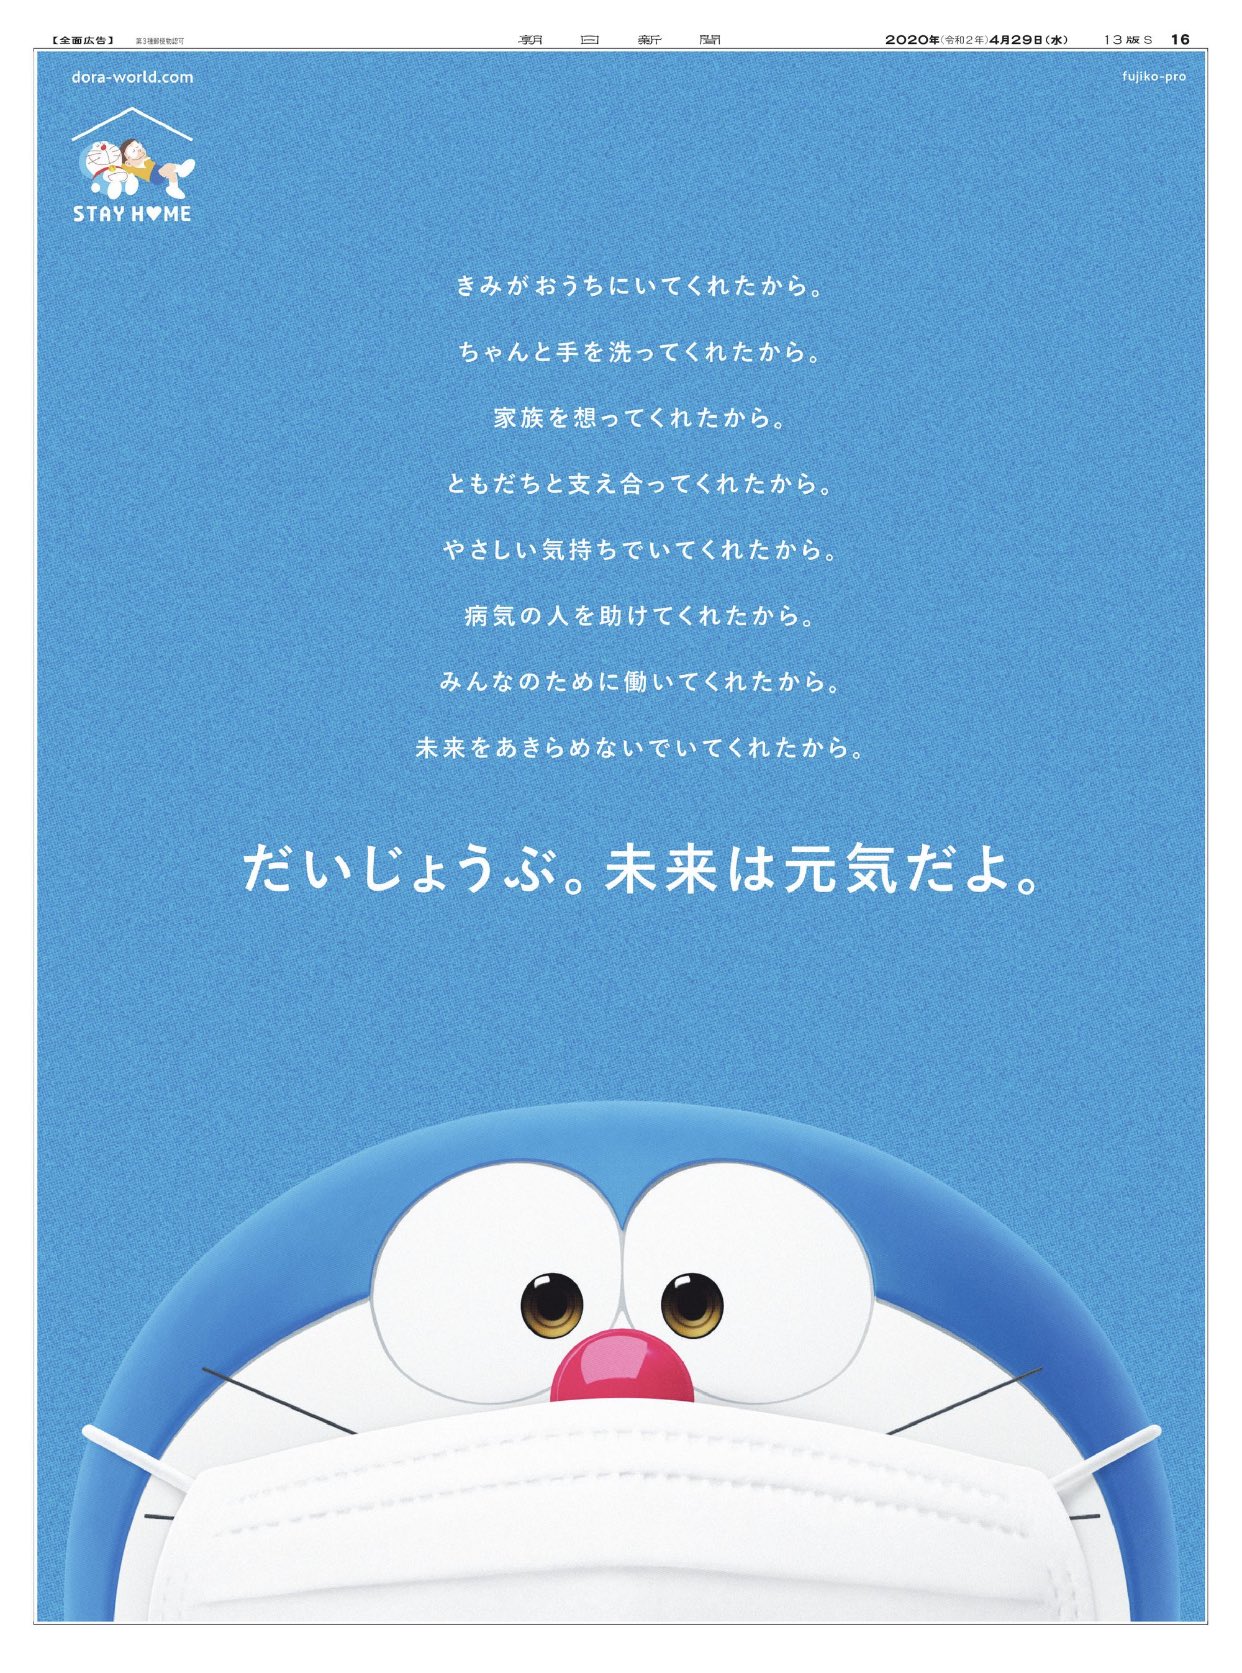 朝日新聞に掲載された ドラえもん の広告に書かれた文章に涙が止まらない いま日本国民全員に送りたい言葉